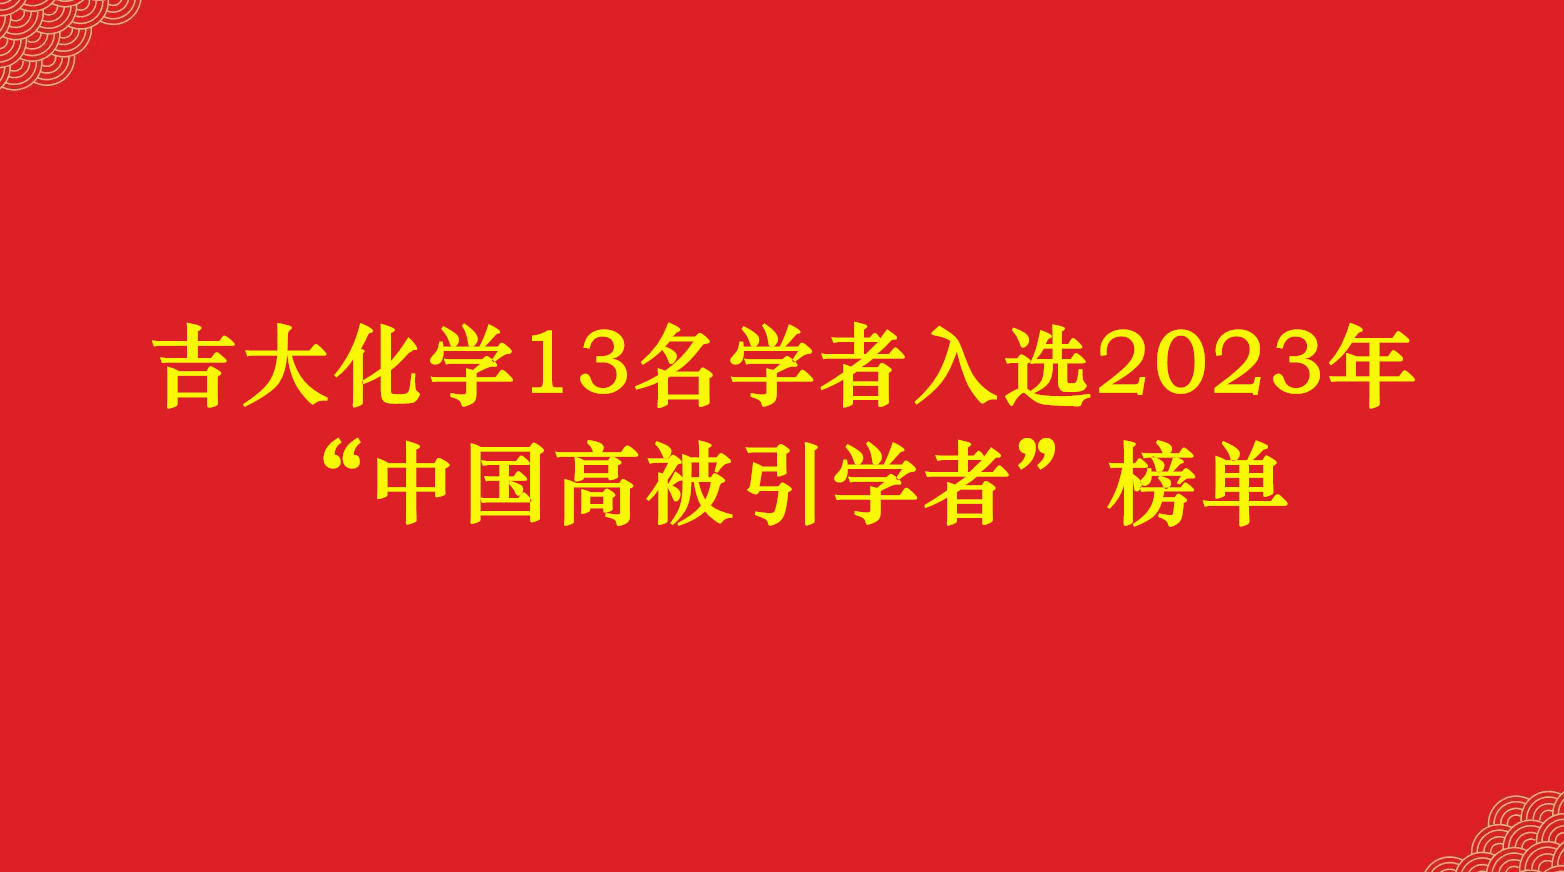 吉大化学13名学者入选2023年“中国高被引学者”榜单